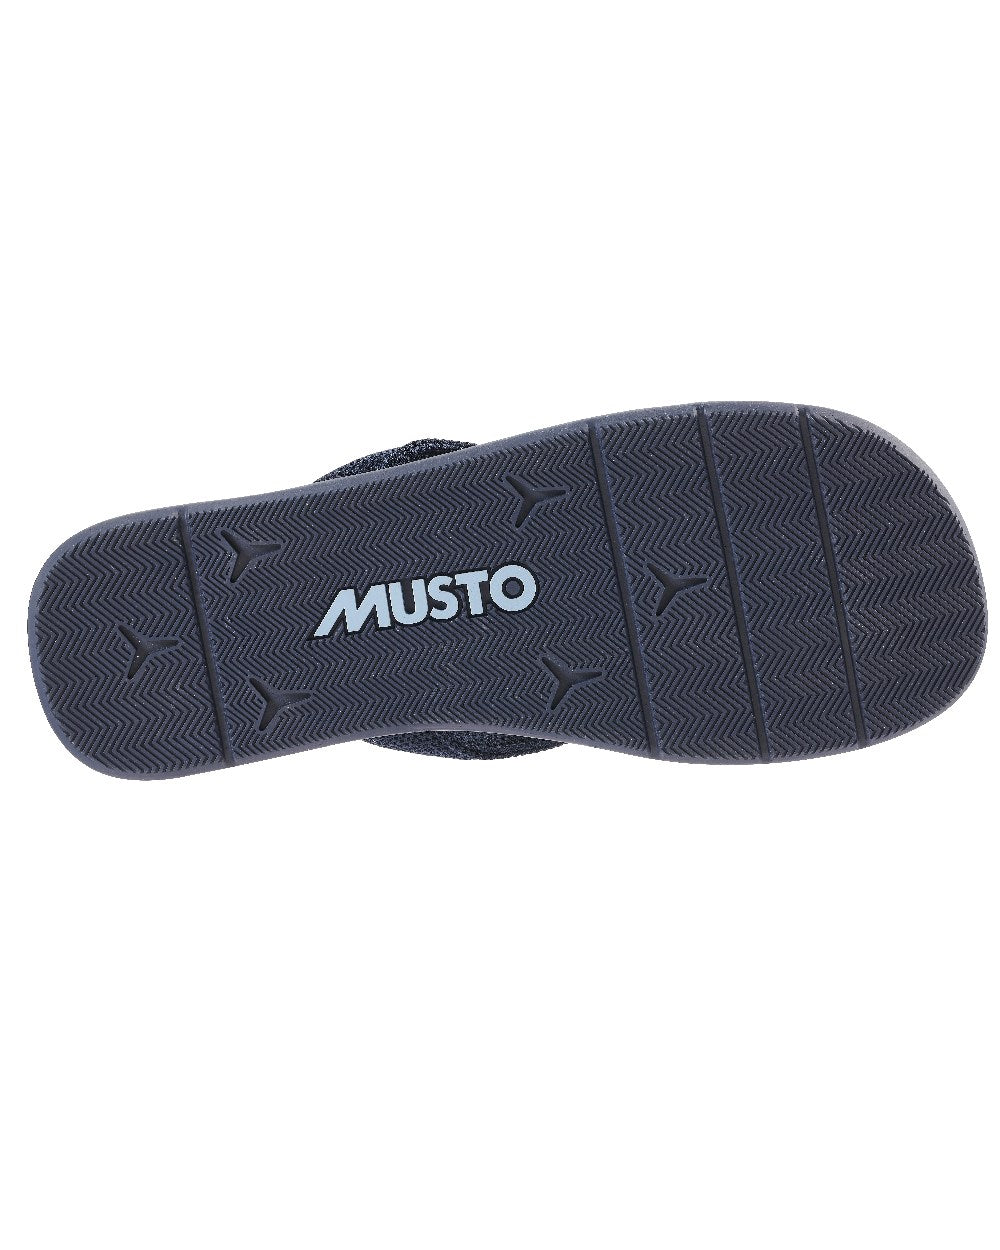 Musto Nautic Sandal in True Navy Dark Sapphire 